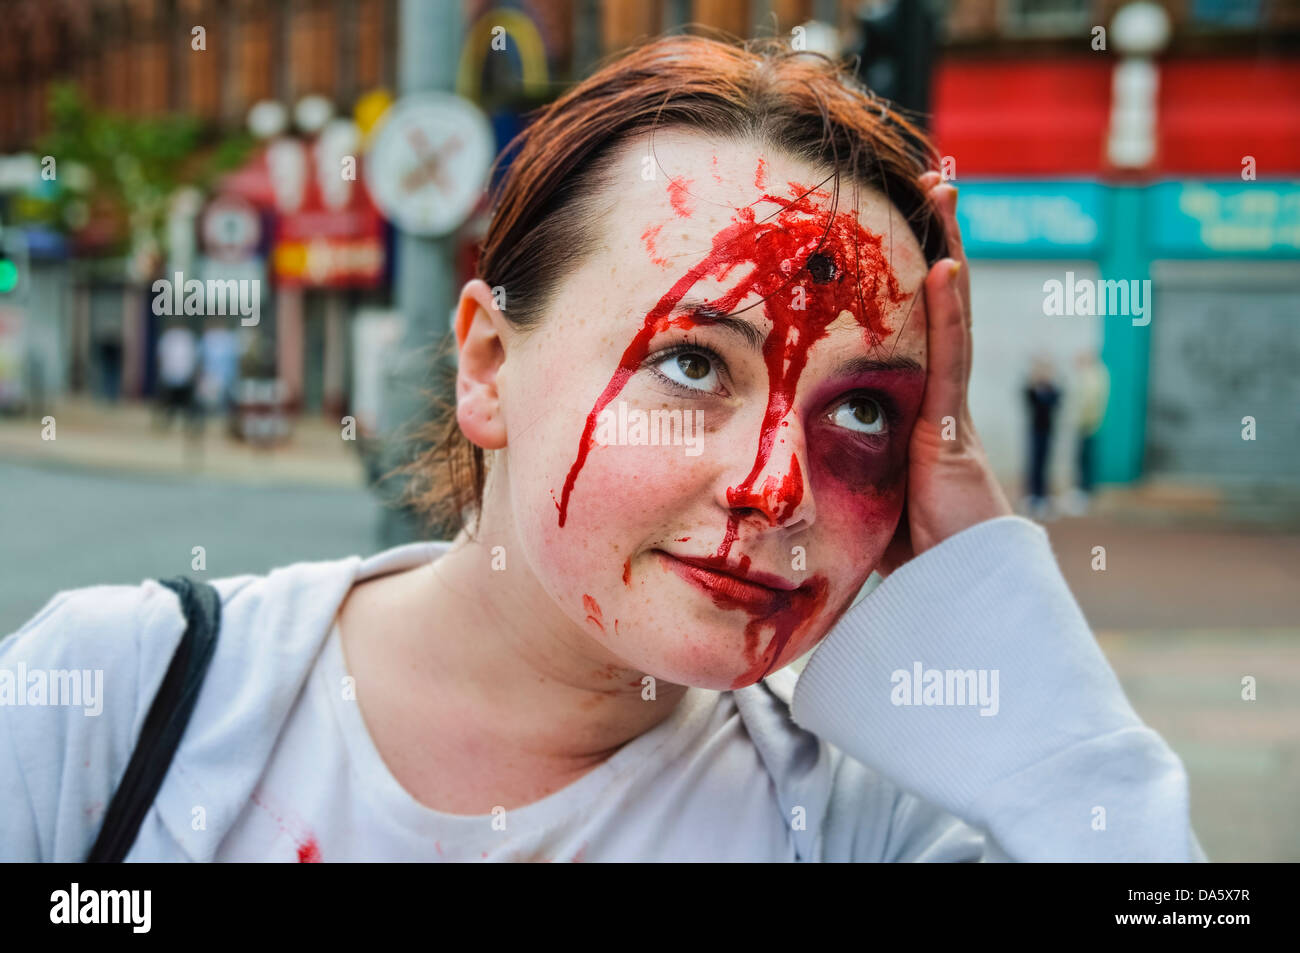 Une actrice avec une simulation d'une blessure par balle à la tête et des contusions détient sa main à sa tête comme si elle a une très mauvaise journée Banque D'Images